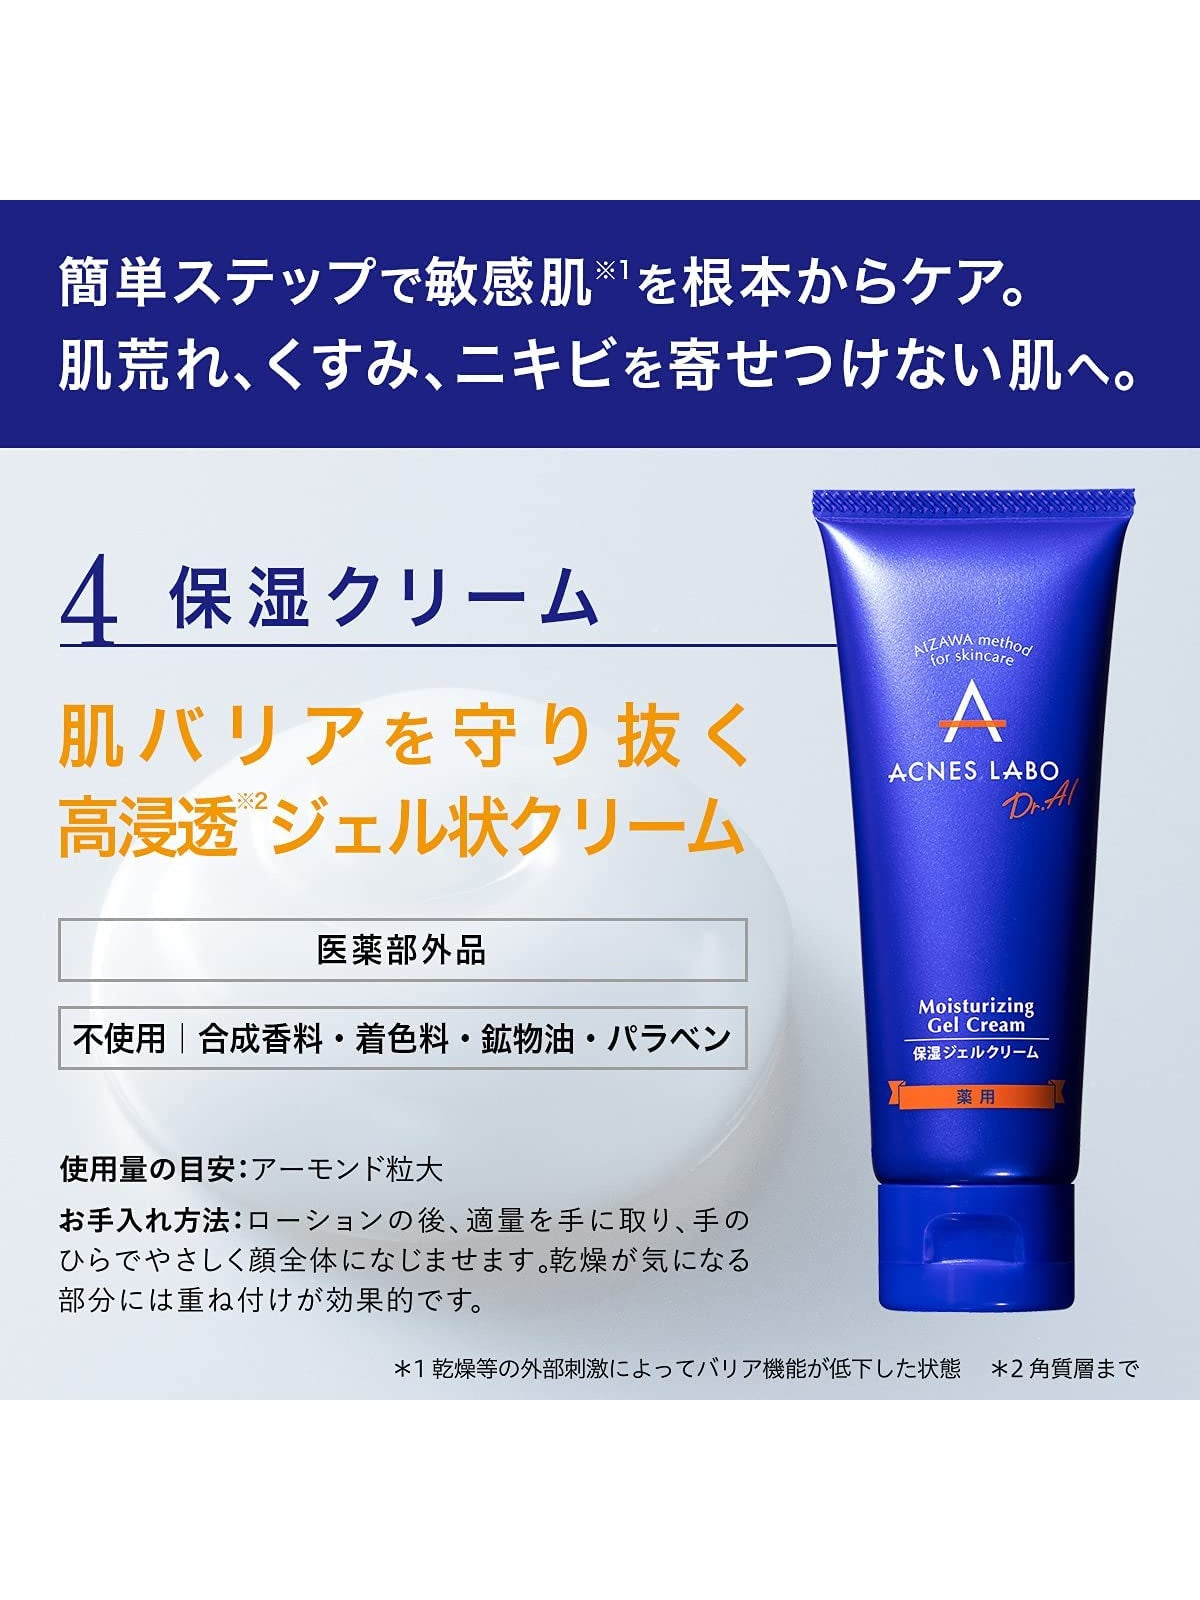 【医薬部外品】薬用 保湿ジェルクリーム [ニキビ予防・敏感肌に] アクネスラボ 60g